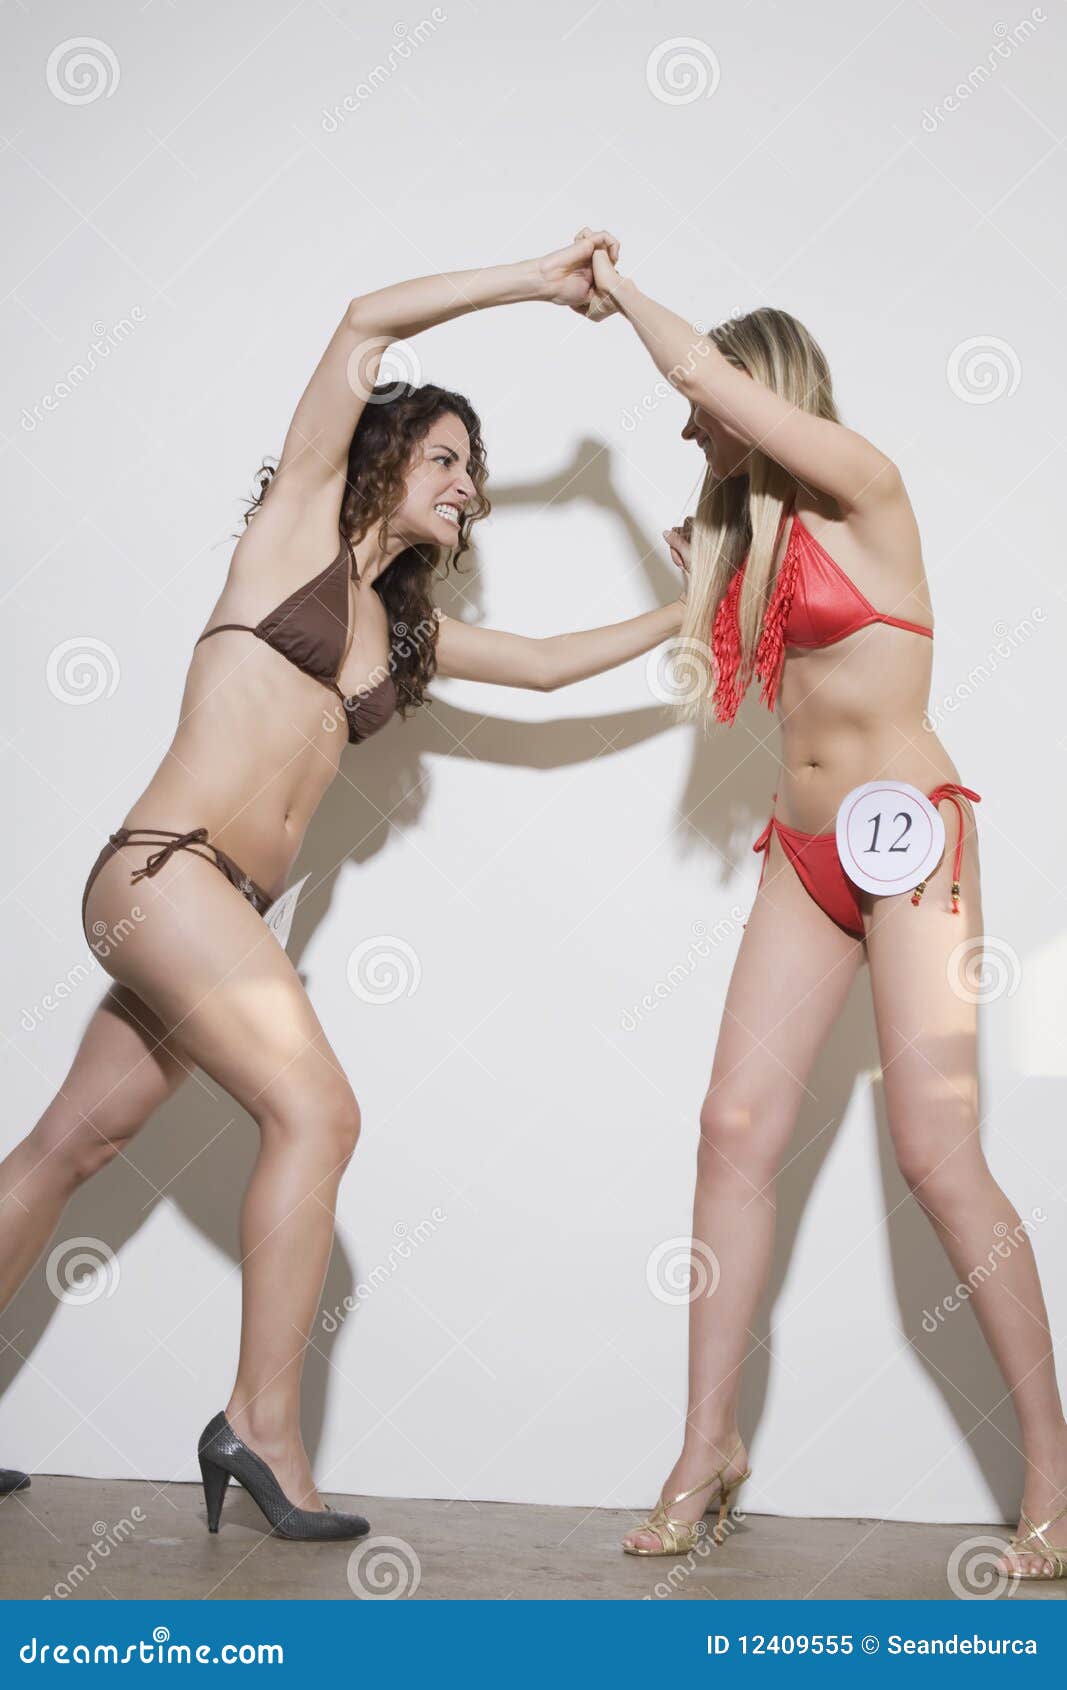 Bikini fight